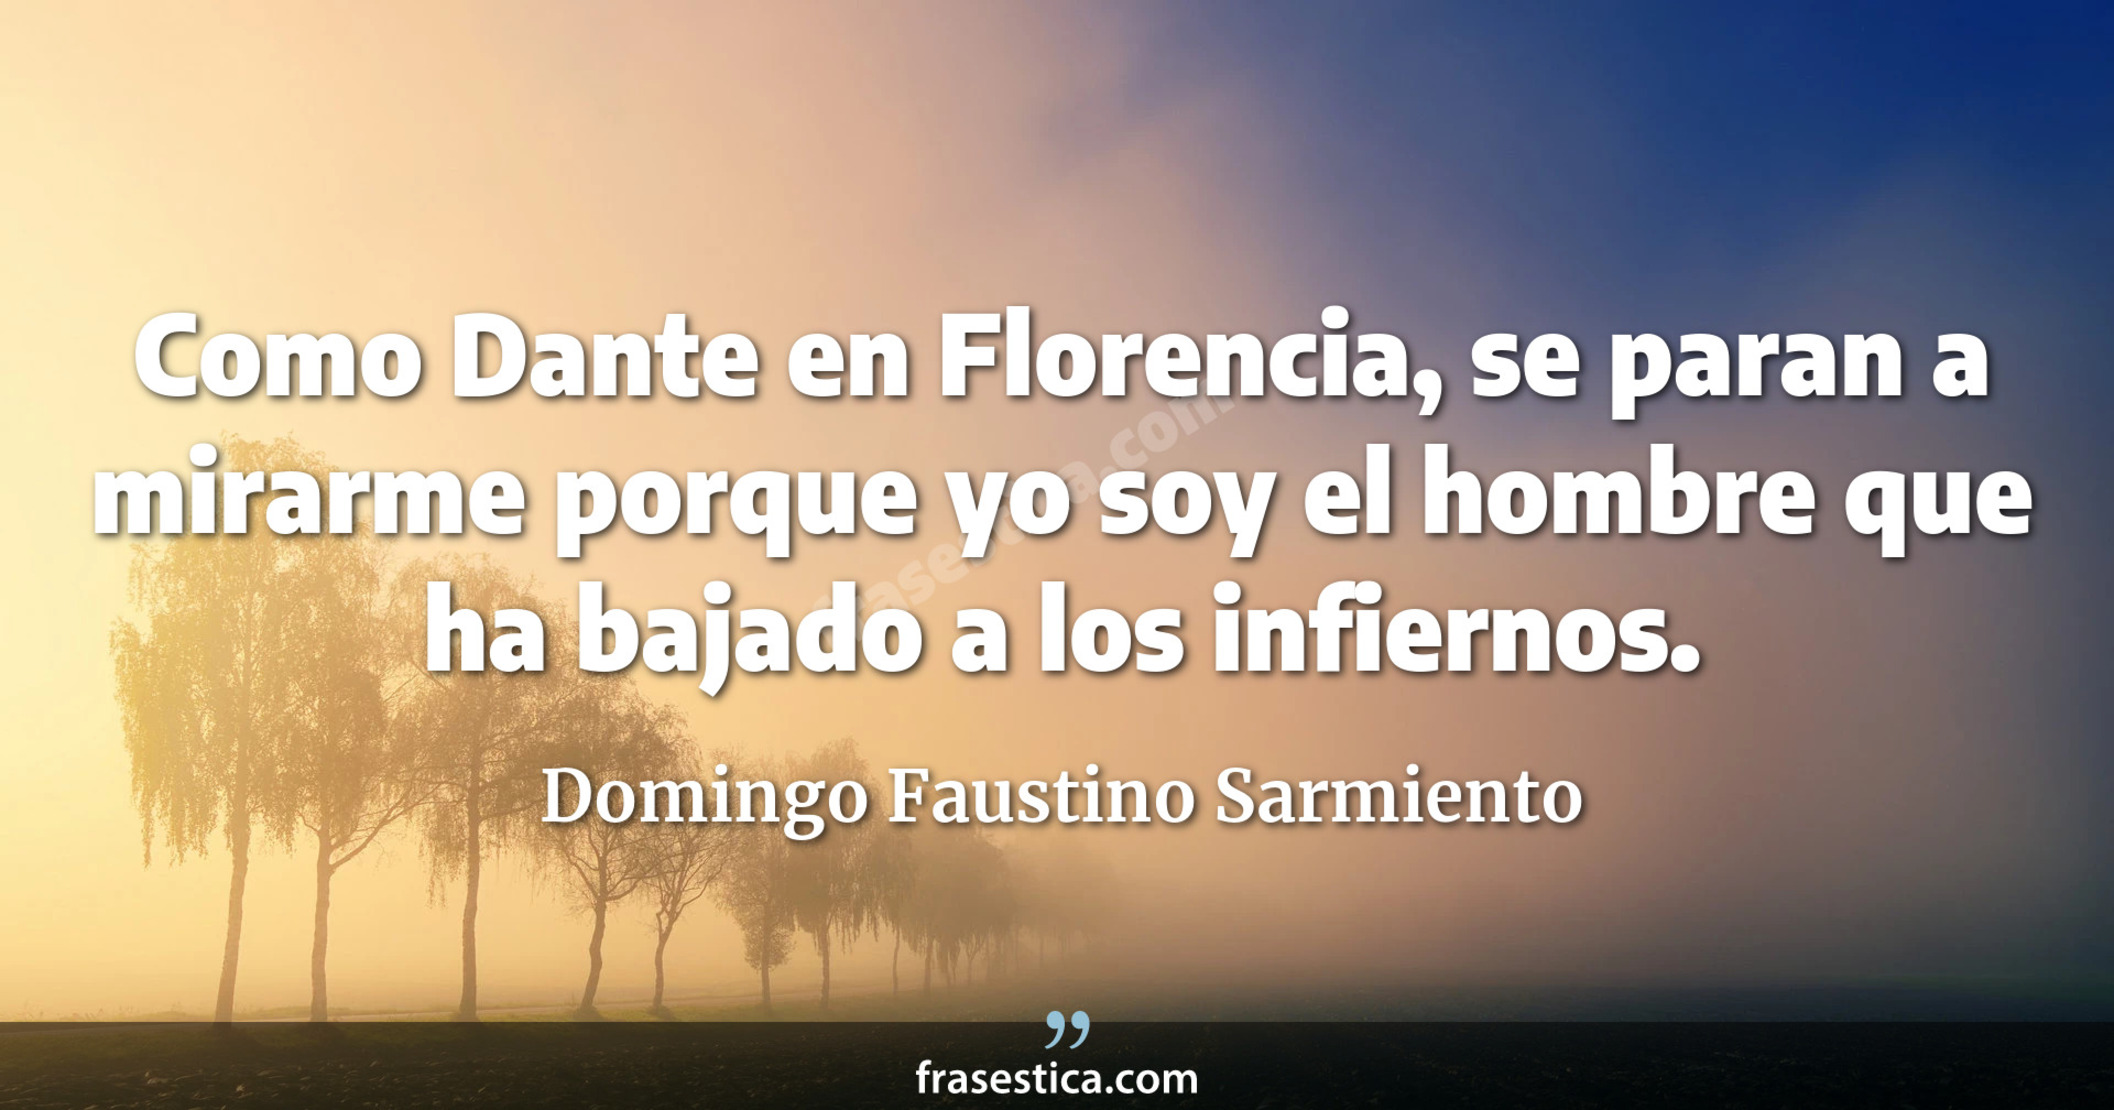 Como Dante en Florencia, se paran a mirarme porque yo soy el hombre que ha bajado a los infiernos. - Domingo Faustino Sarmiento